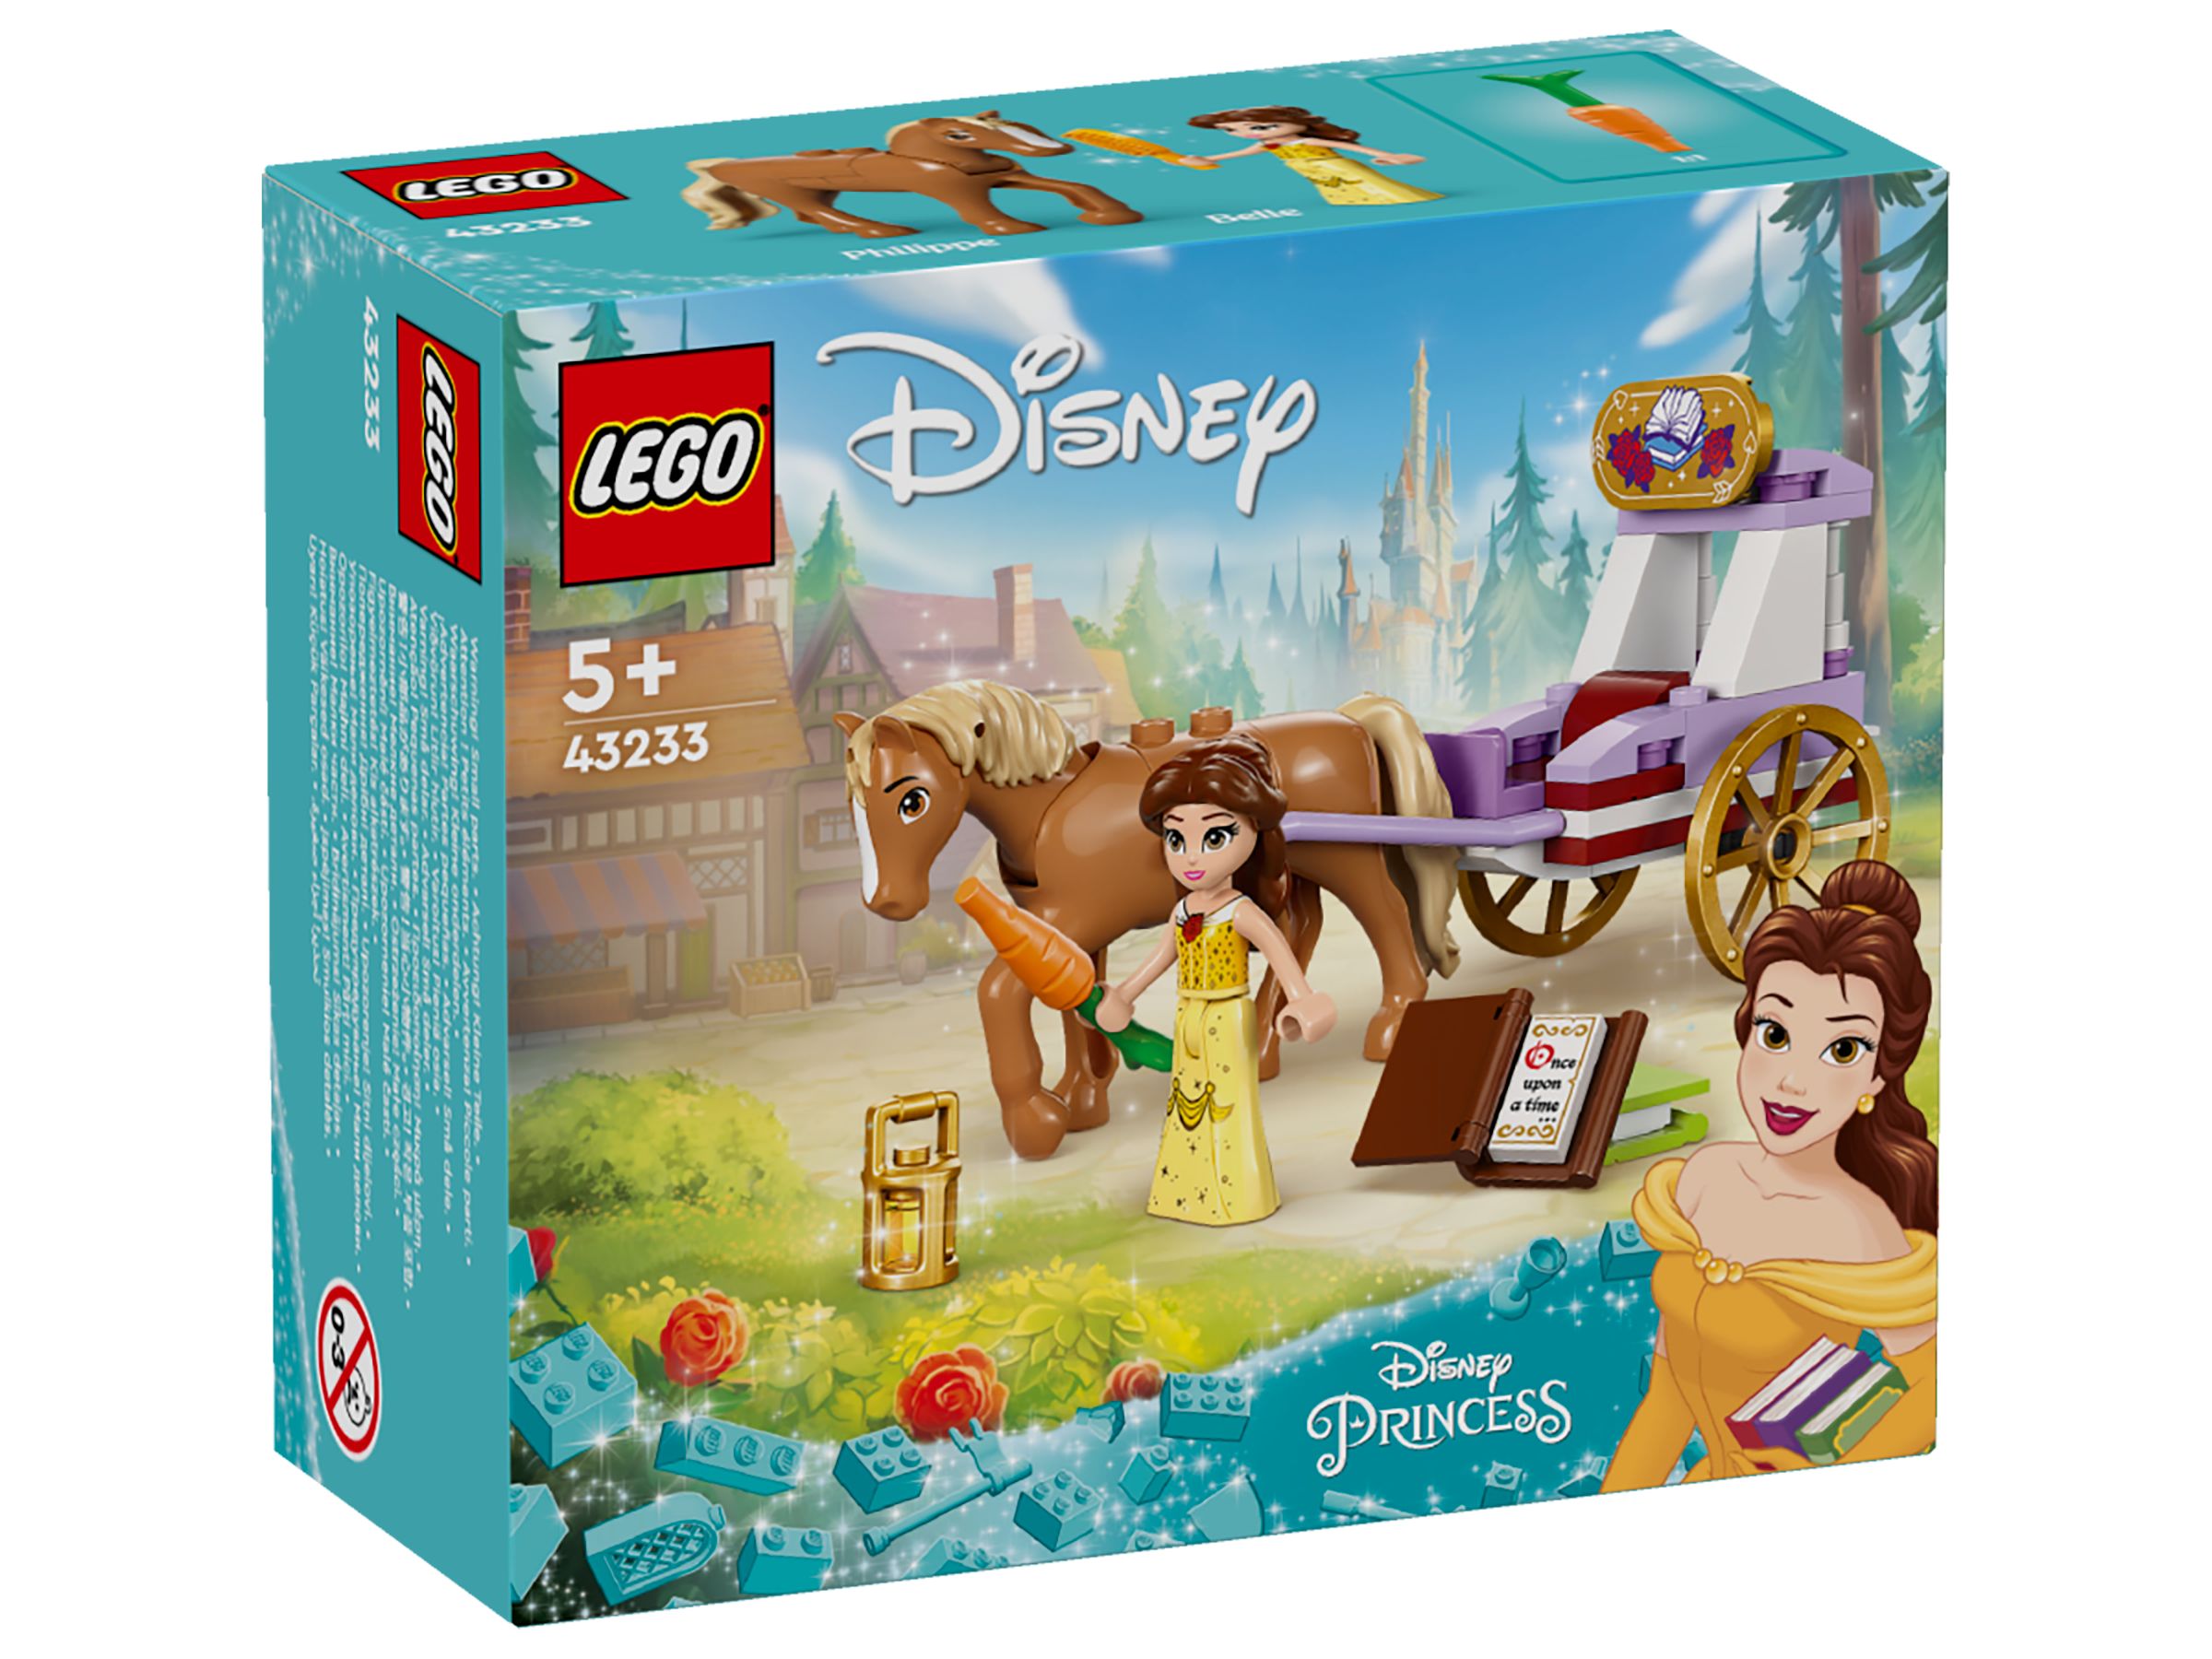 LEGO Disney 43233 Belles Pferdekutsche LEGO_43233_box1_v29.jpg